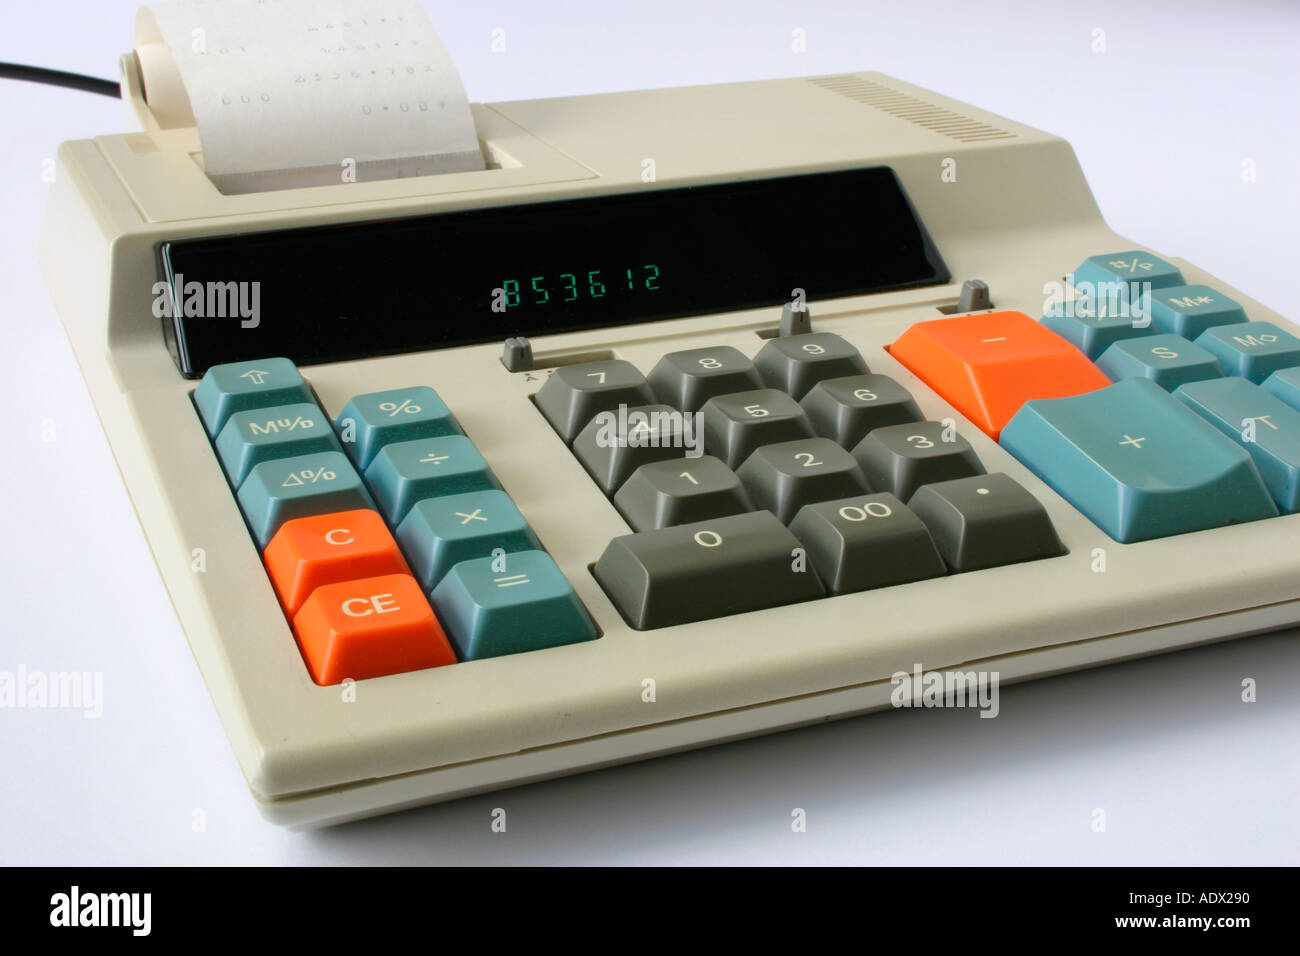 Un calculateur électronique des années 1980 à l'aide d'un rouleau de papier imprimé. Banque D'Images